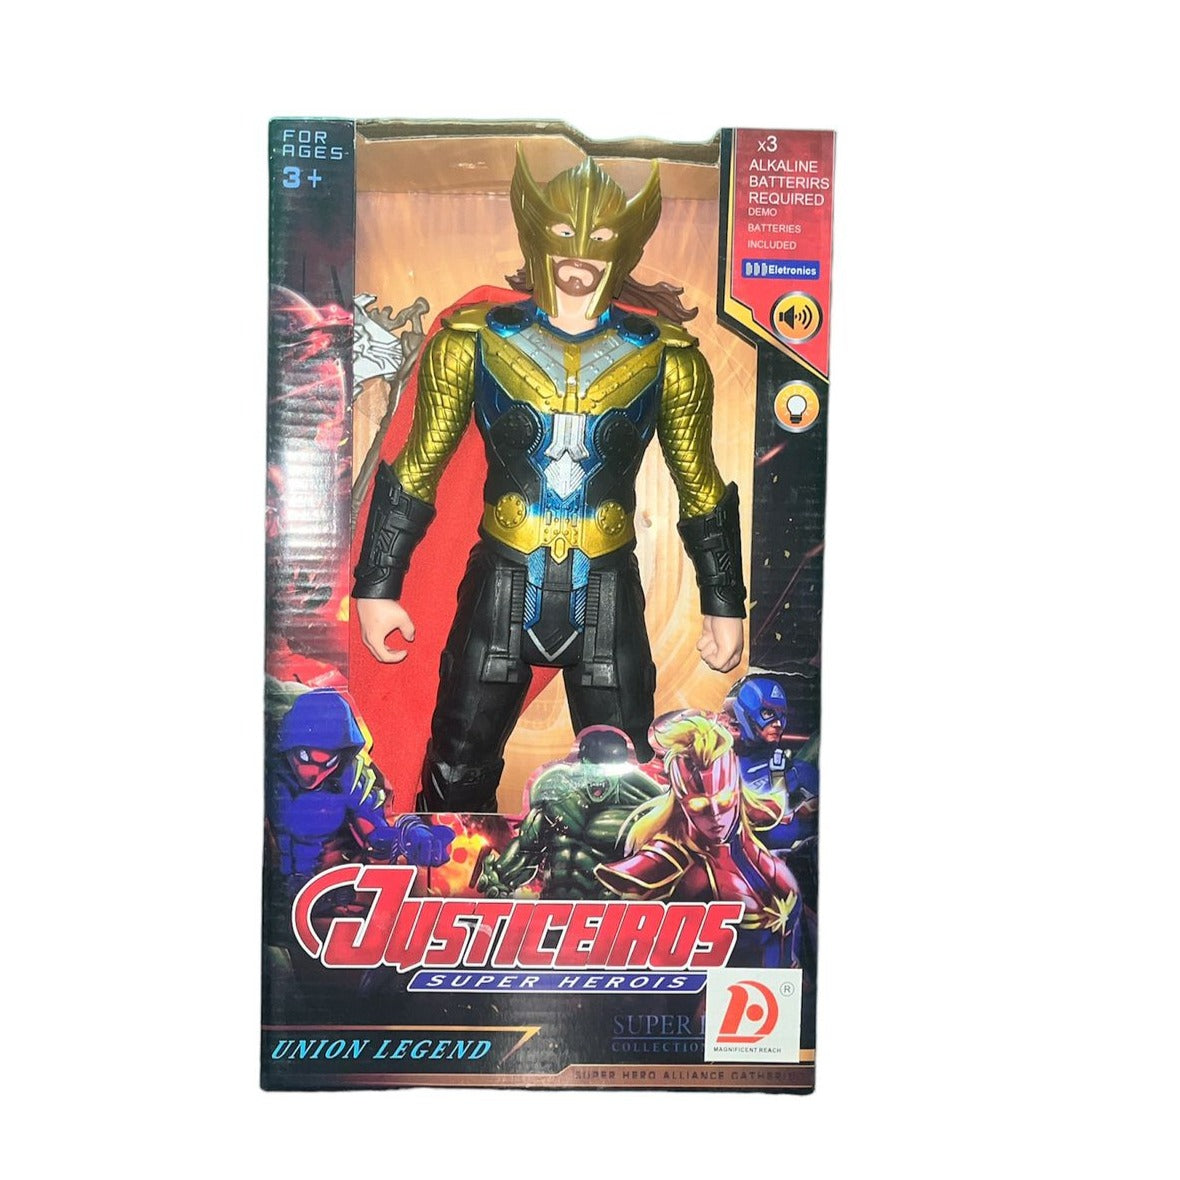 Avengers Union Legend Action Figures - Thor